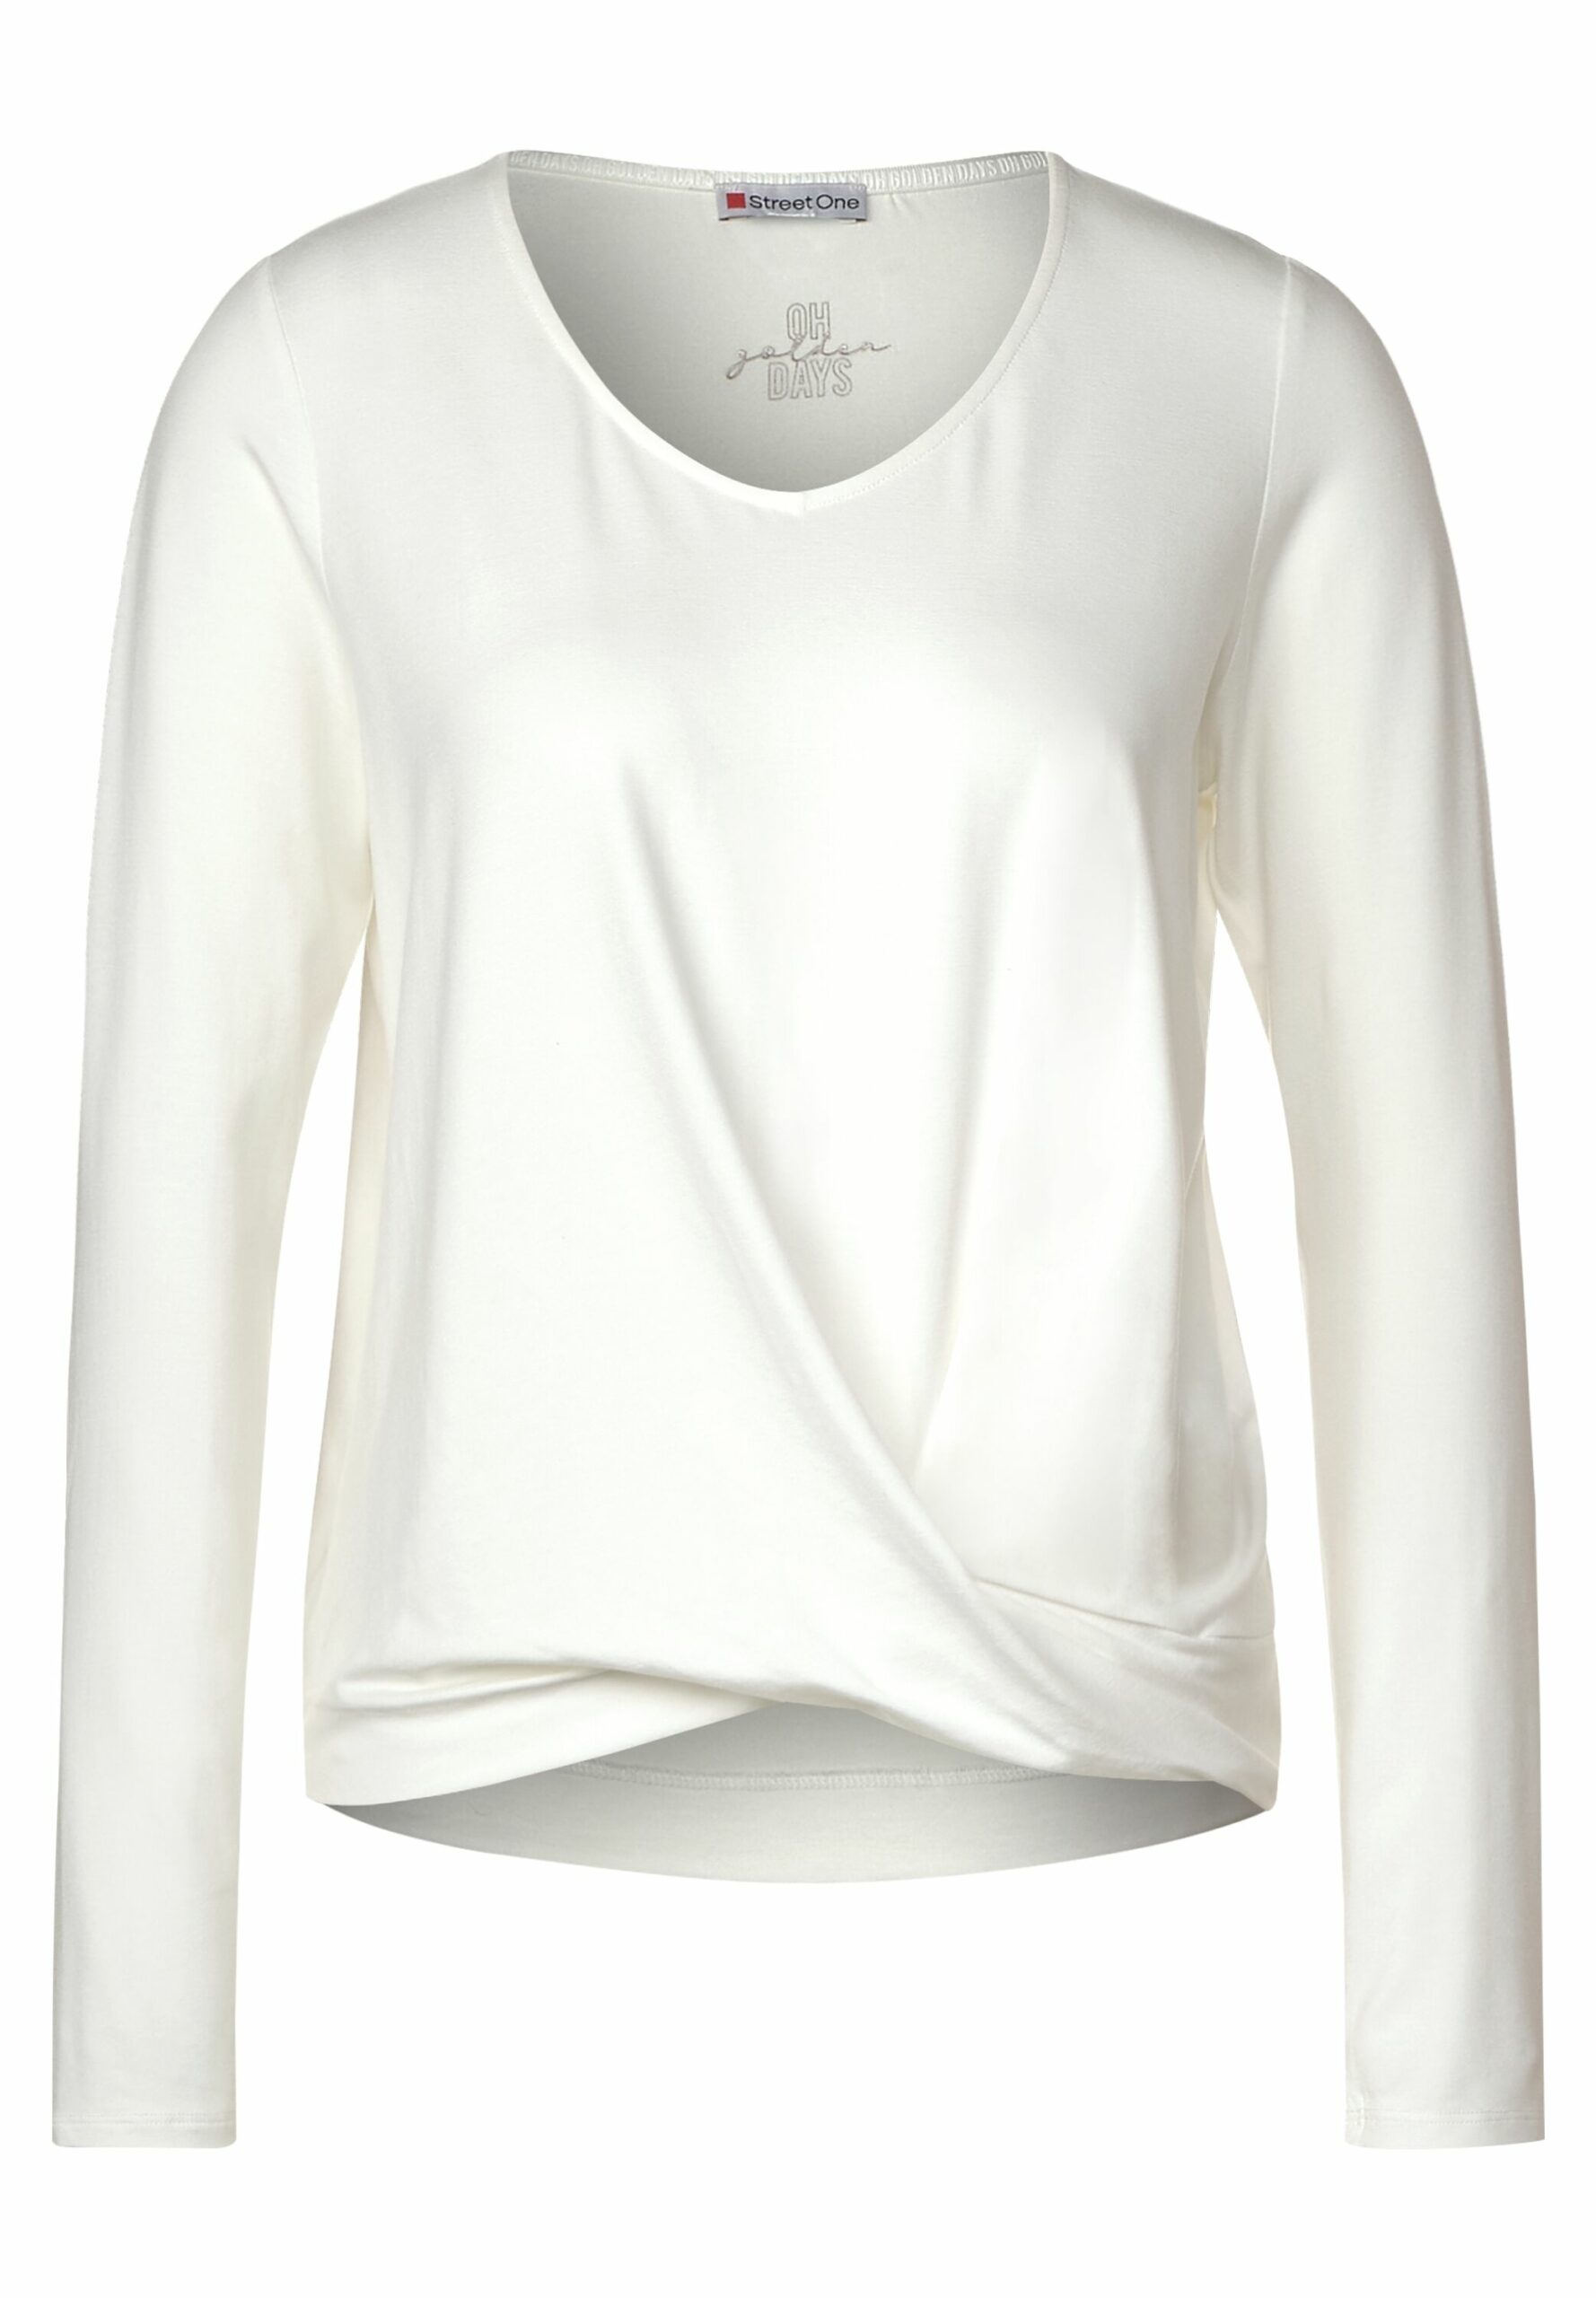 Street Schmidt Lifestyle & - - Fashion Knotendetail mit Onlineshop Shirt One